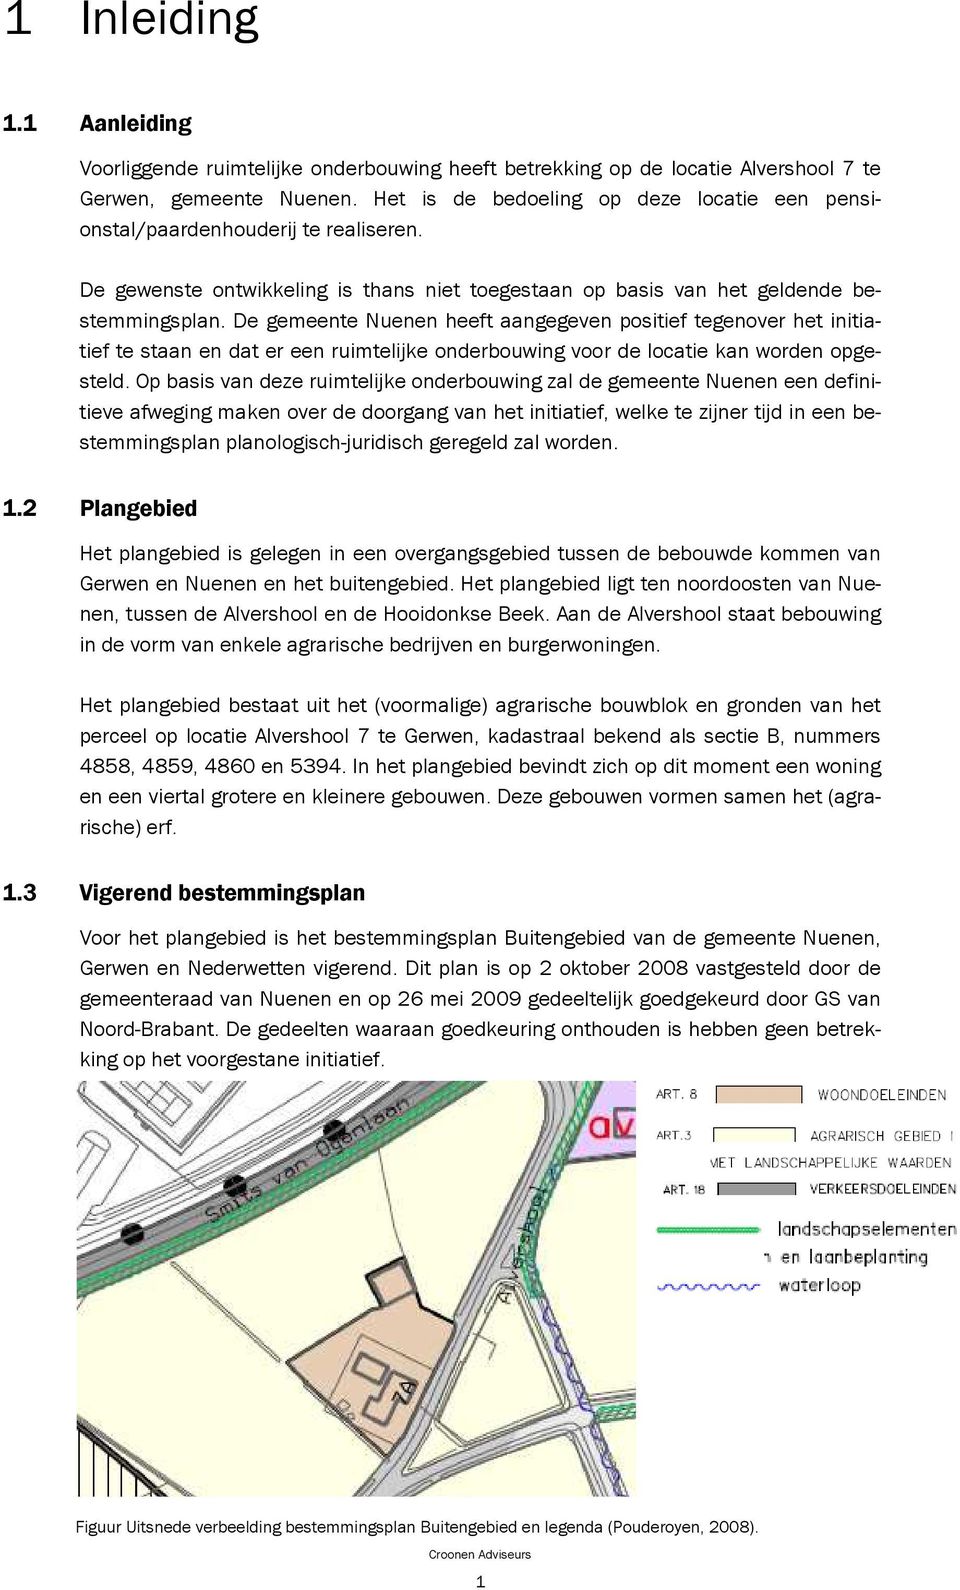 De gemeente Nuenen heeft aangegeven positief tegenover het initiatief te staan en dat er een ruimtelijke onderbouwing voor de locatie kan worden opgesteld.